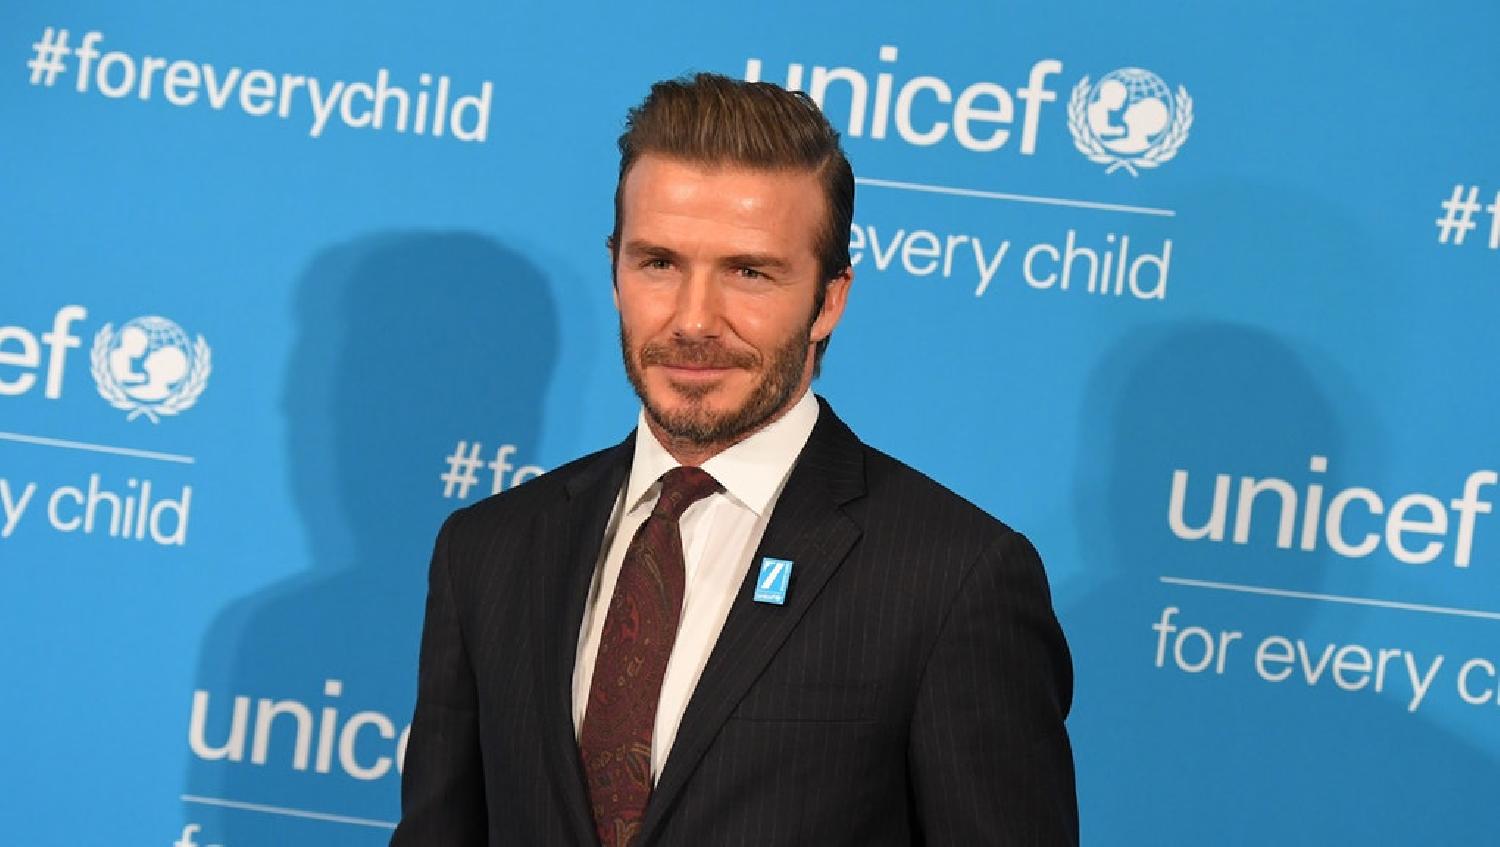 L’UNICEF réfute les informations liées à la participation de David Beckham au match de football du Gala de la Marche verte au Maroc